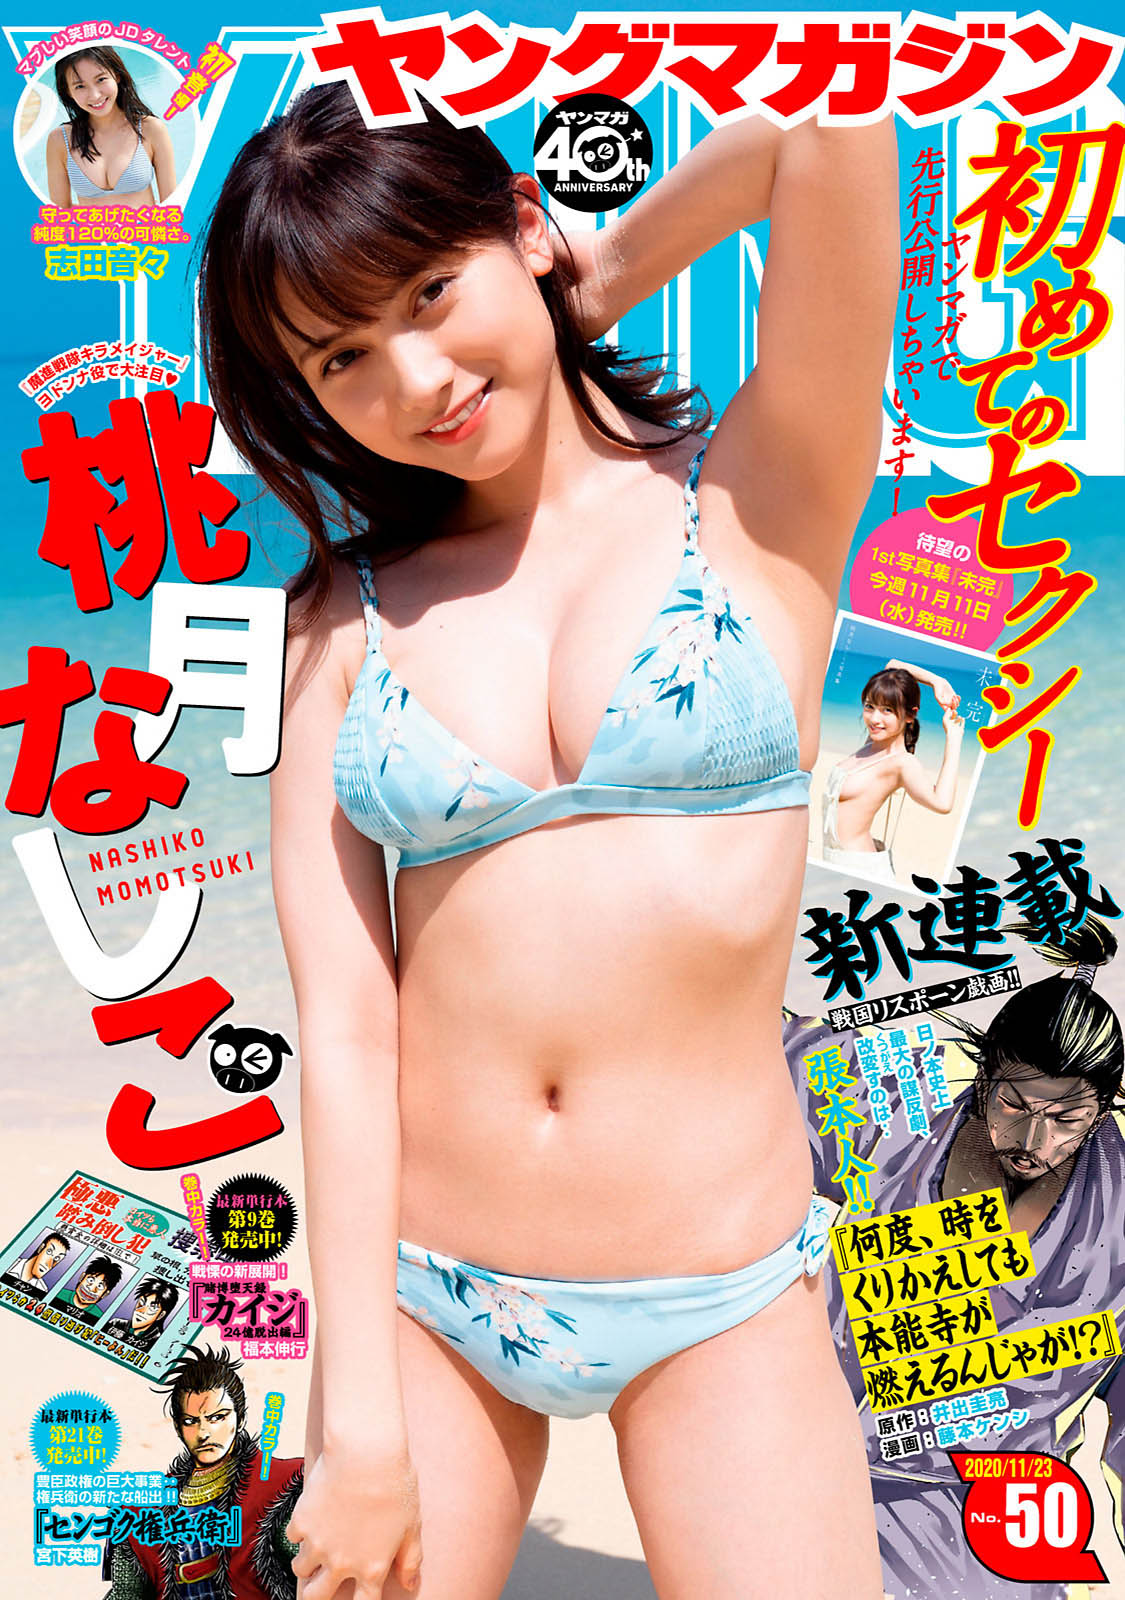 Nashiko Momotsuki 桃月なしこ, Young Magazine 2020 No.50 (ヤングマガジン 2020年50号)